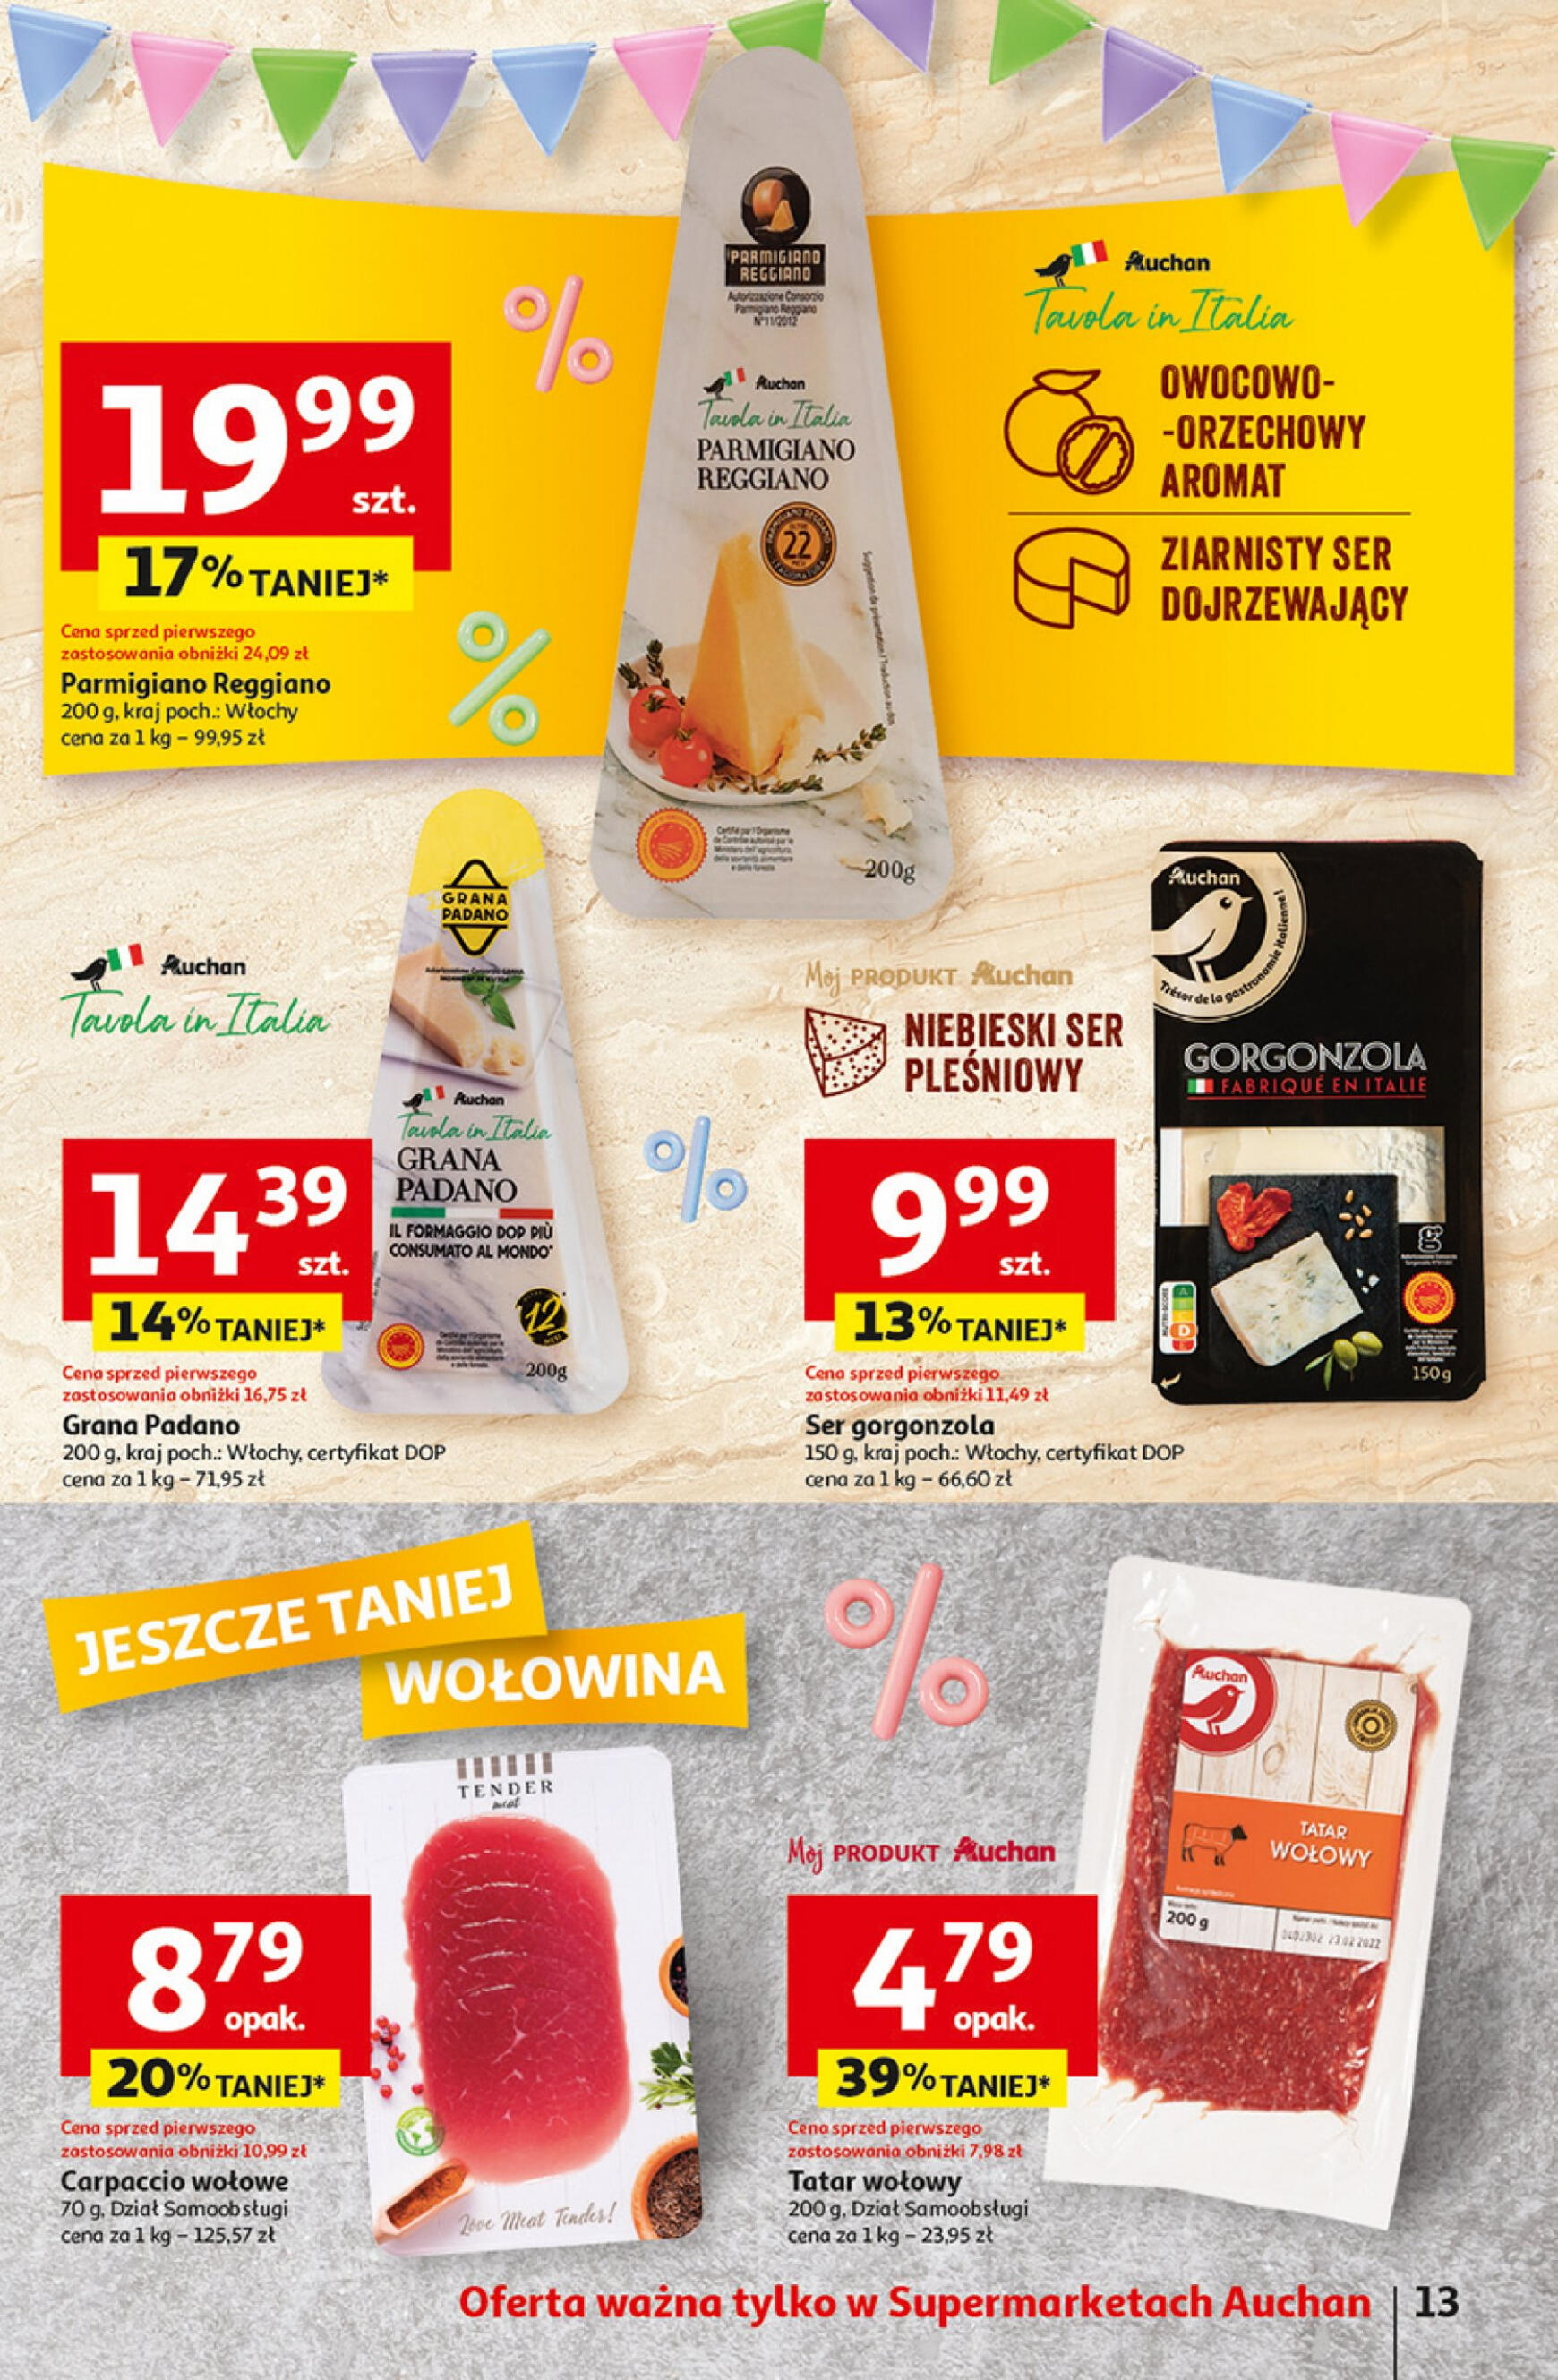 auchan - Supermarket Auchan - Gazetka Jeszcze taniej na urodziny gazetka aktualna ważna od 09.05. - 15.05. - page: 13